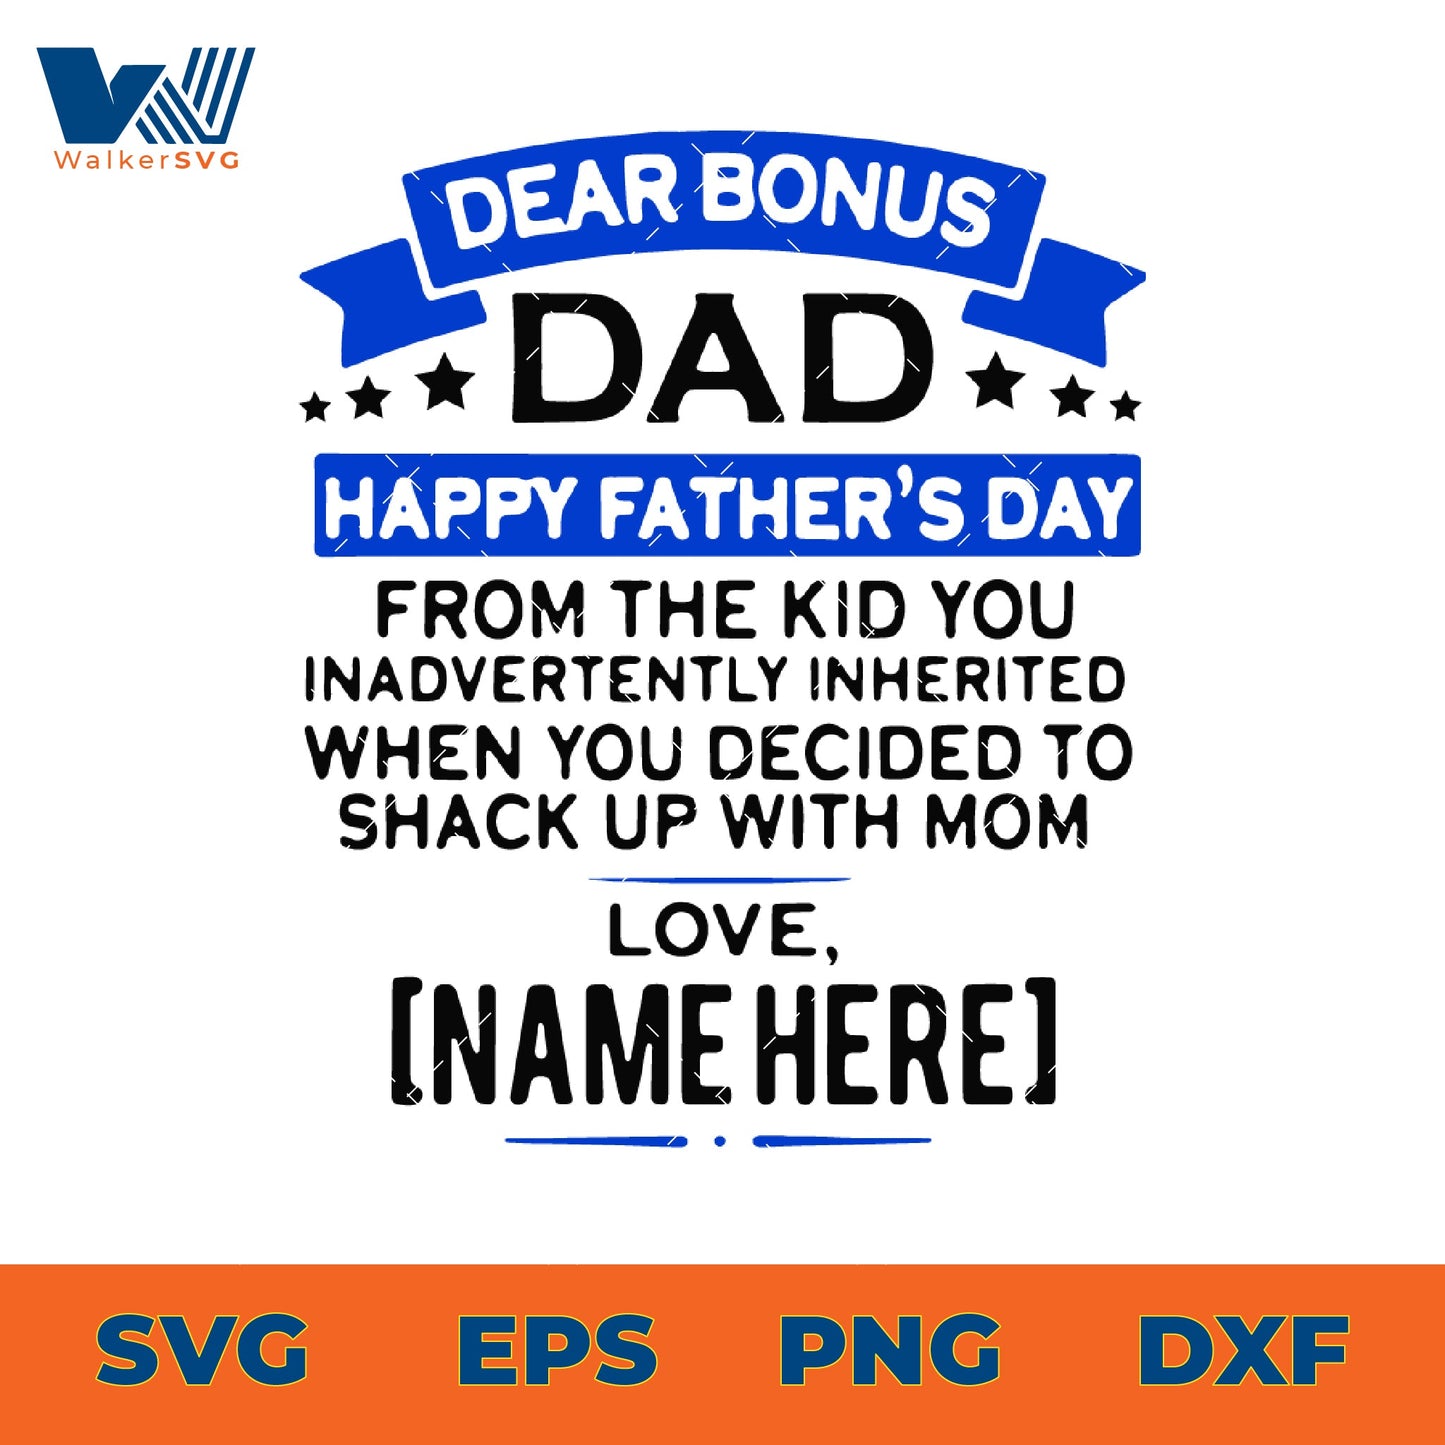 Dear Bonus Dad, Happy Father's Day SVG